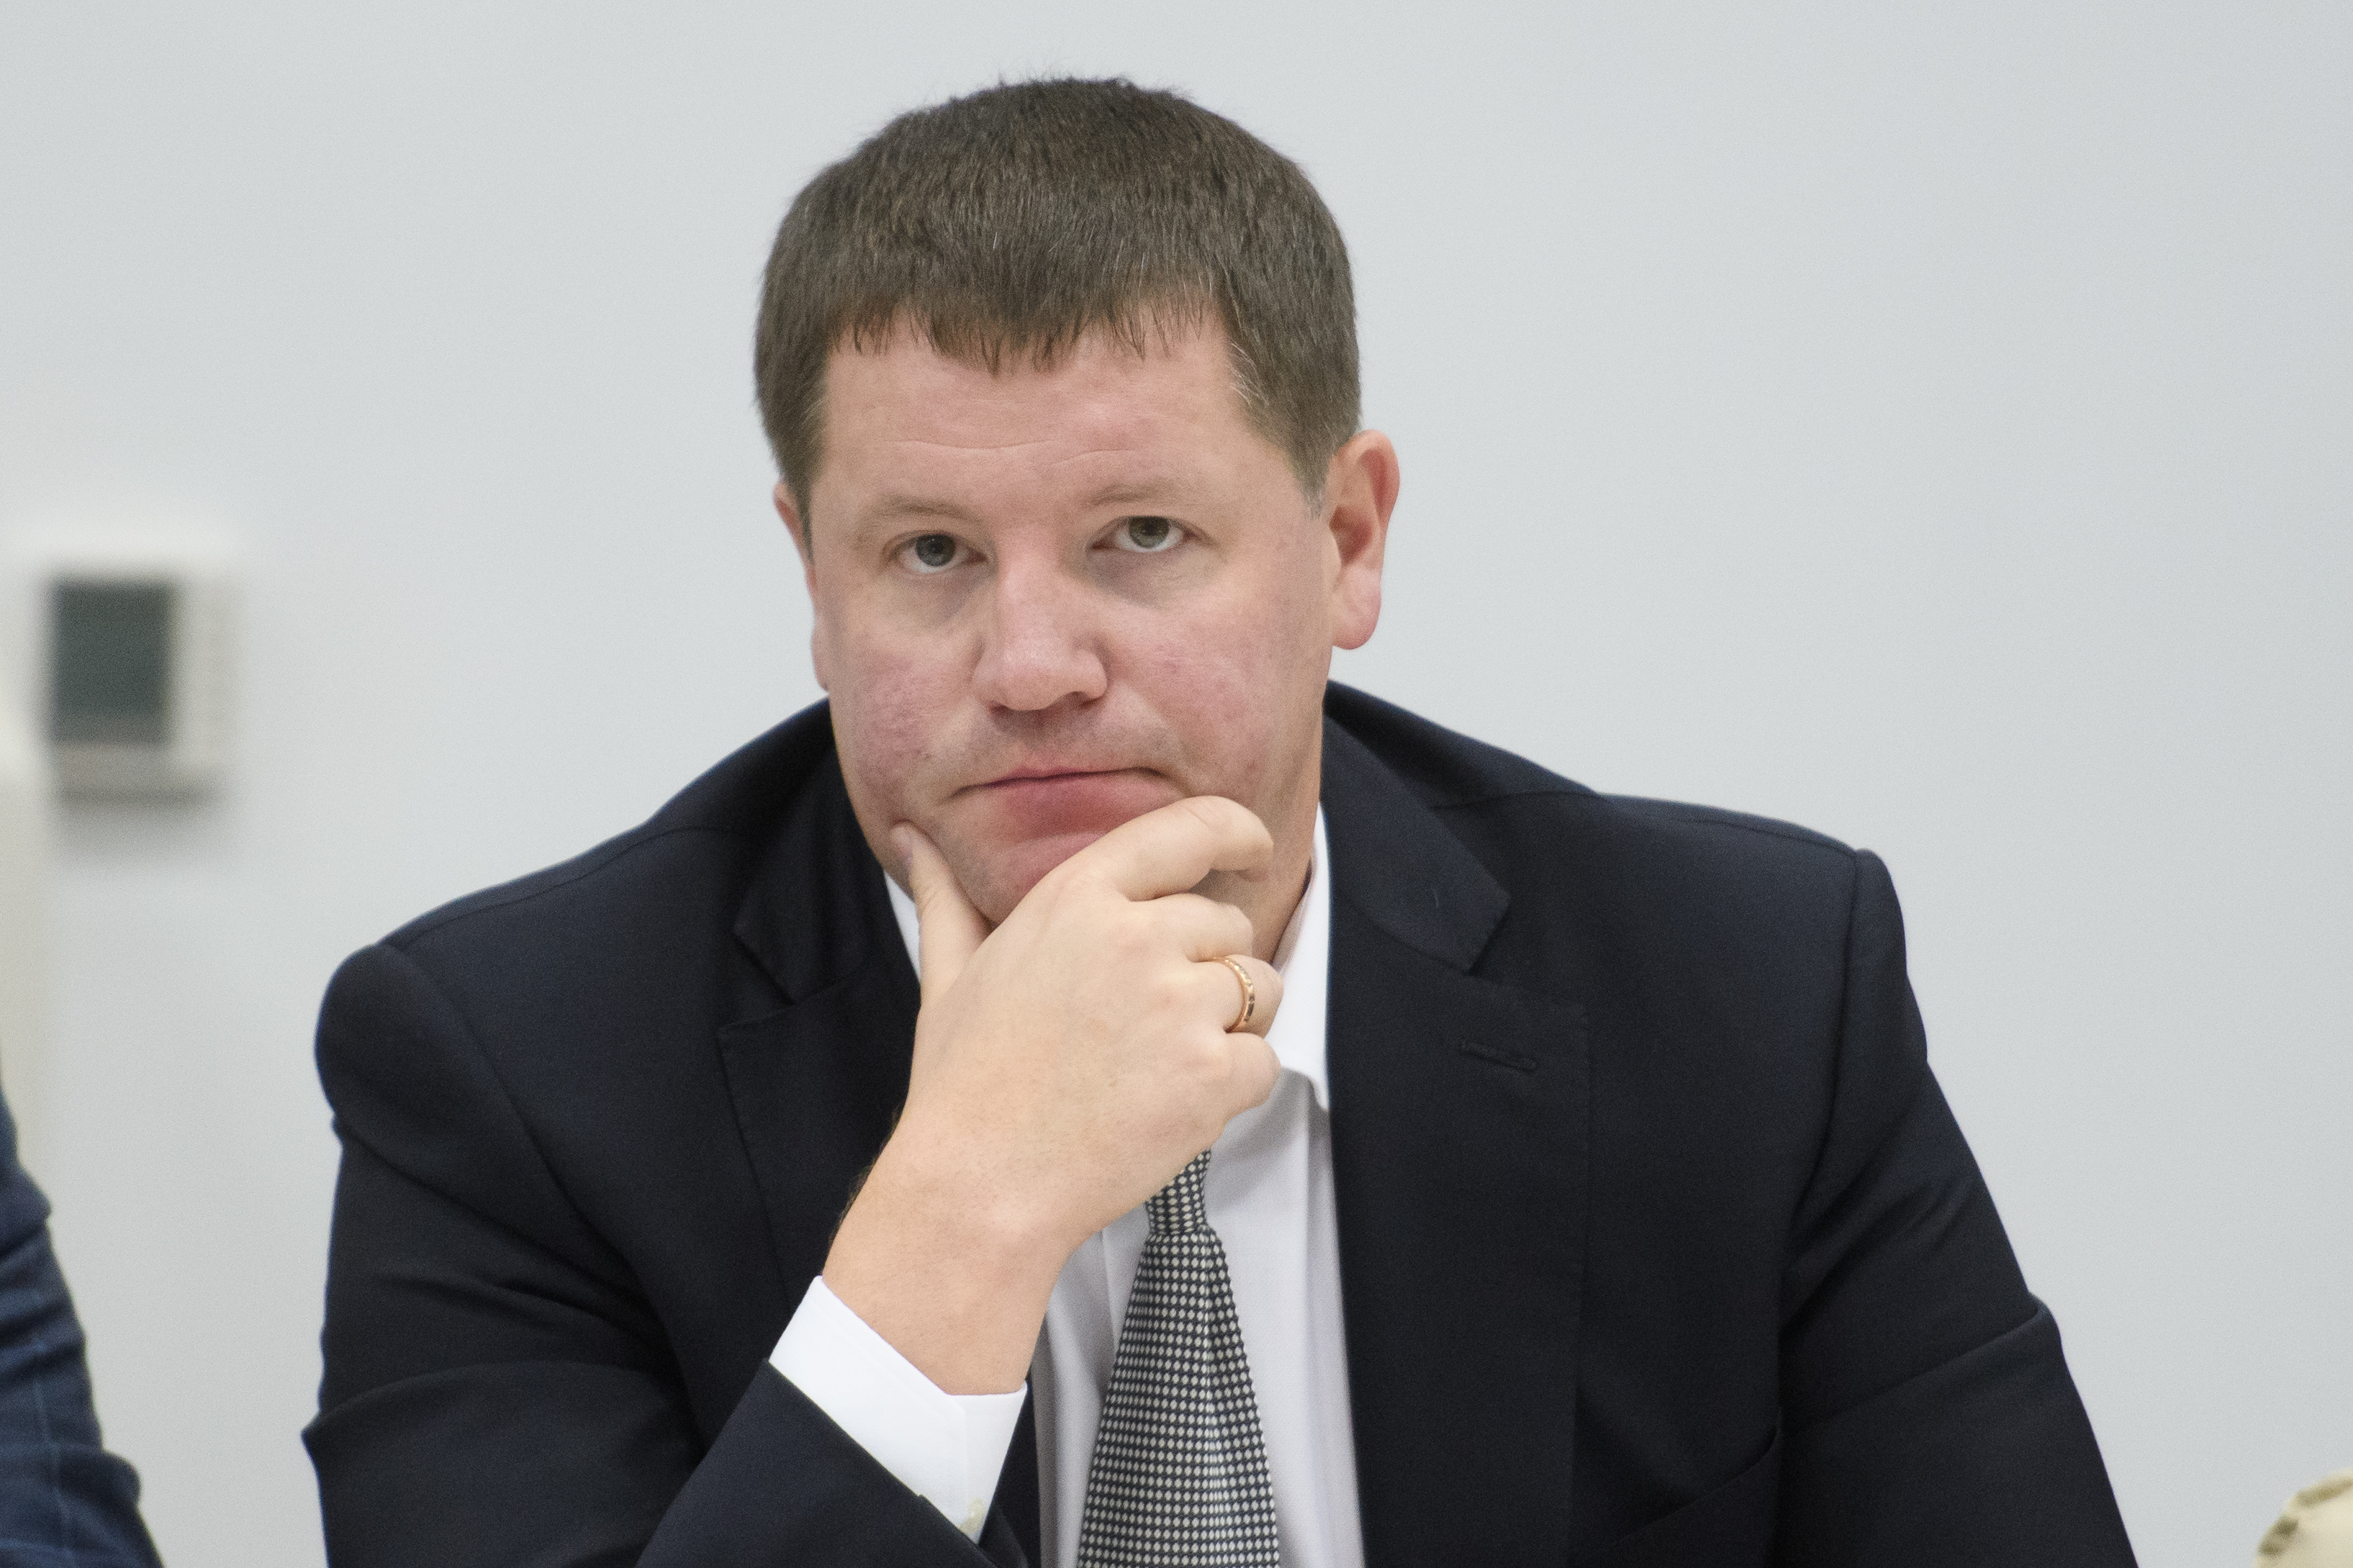 Сергей Бидонько – одна из самых неоднозначных фигур в окружении губернатора Свердловской области.